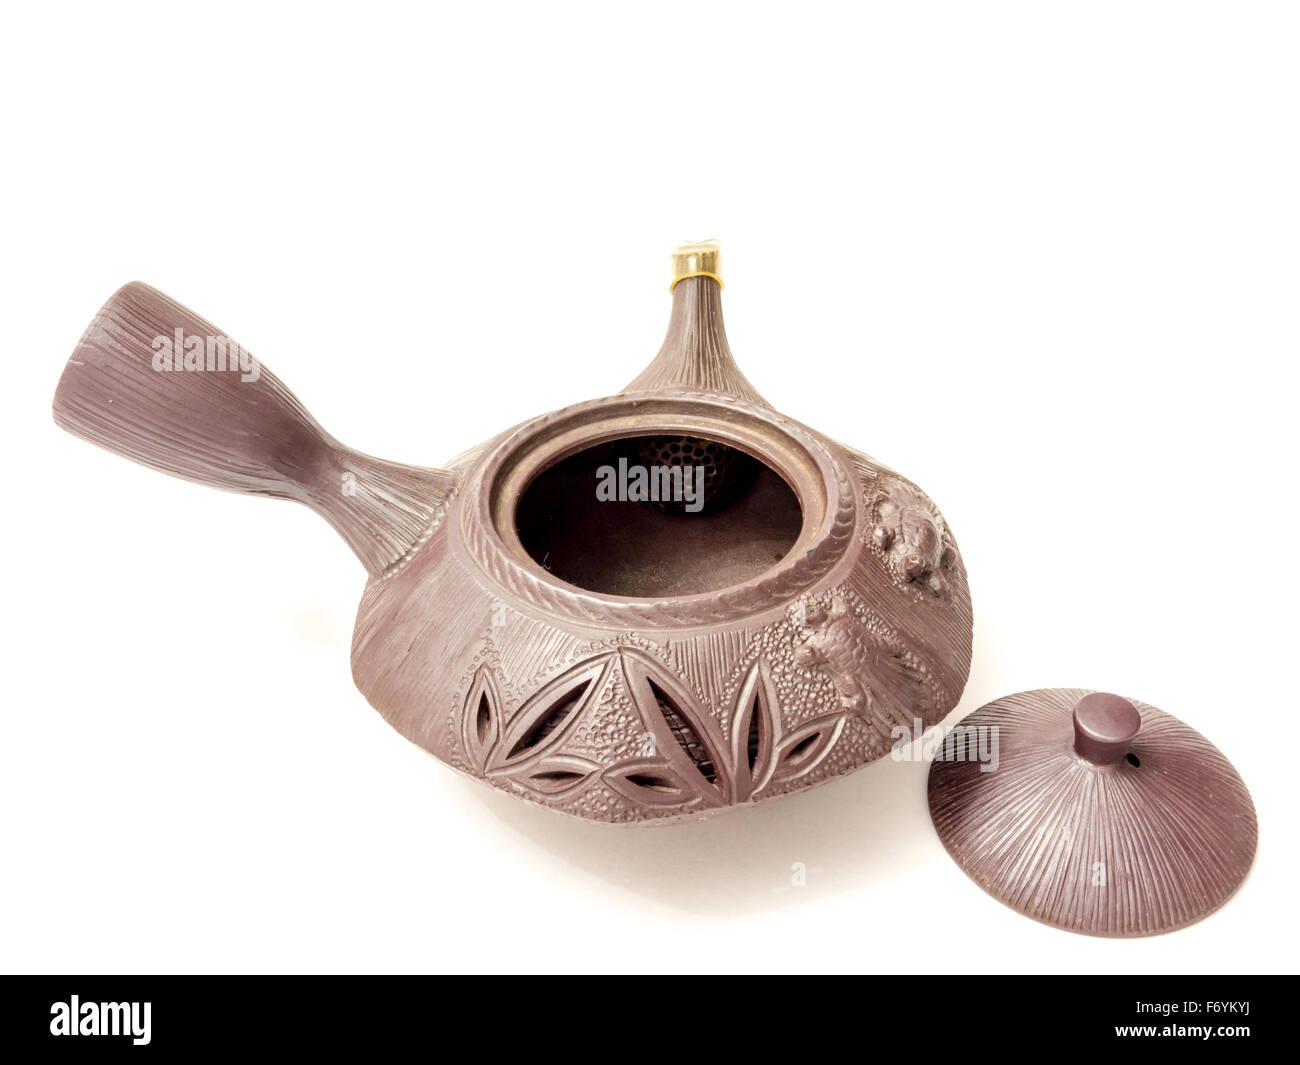 GOMEL, BELARUS - NOVEMBER 15, 2015: The Japanese porcelain teapot. Stock Photo